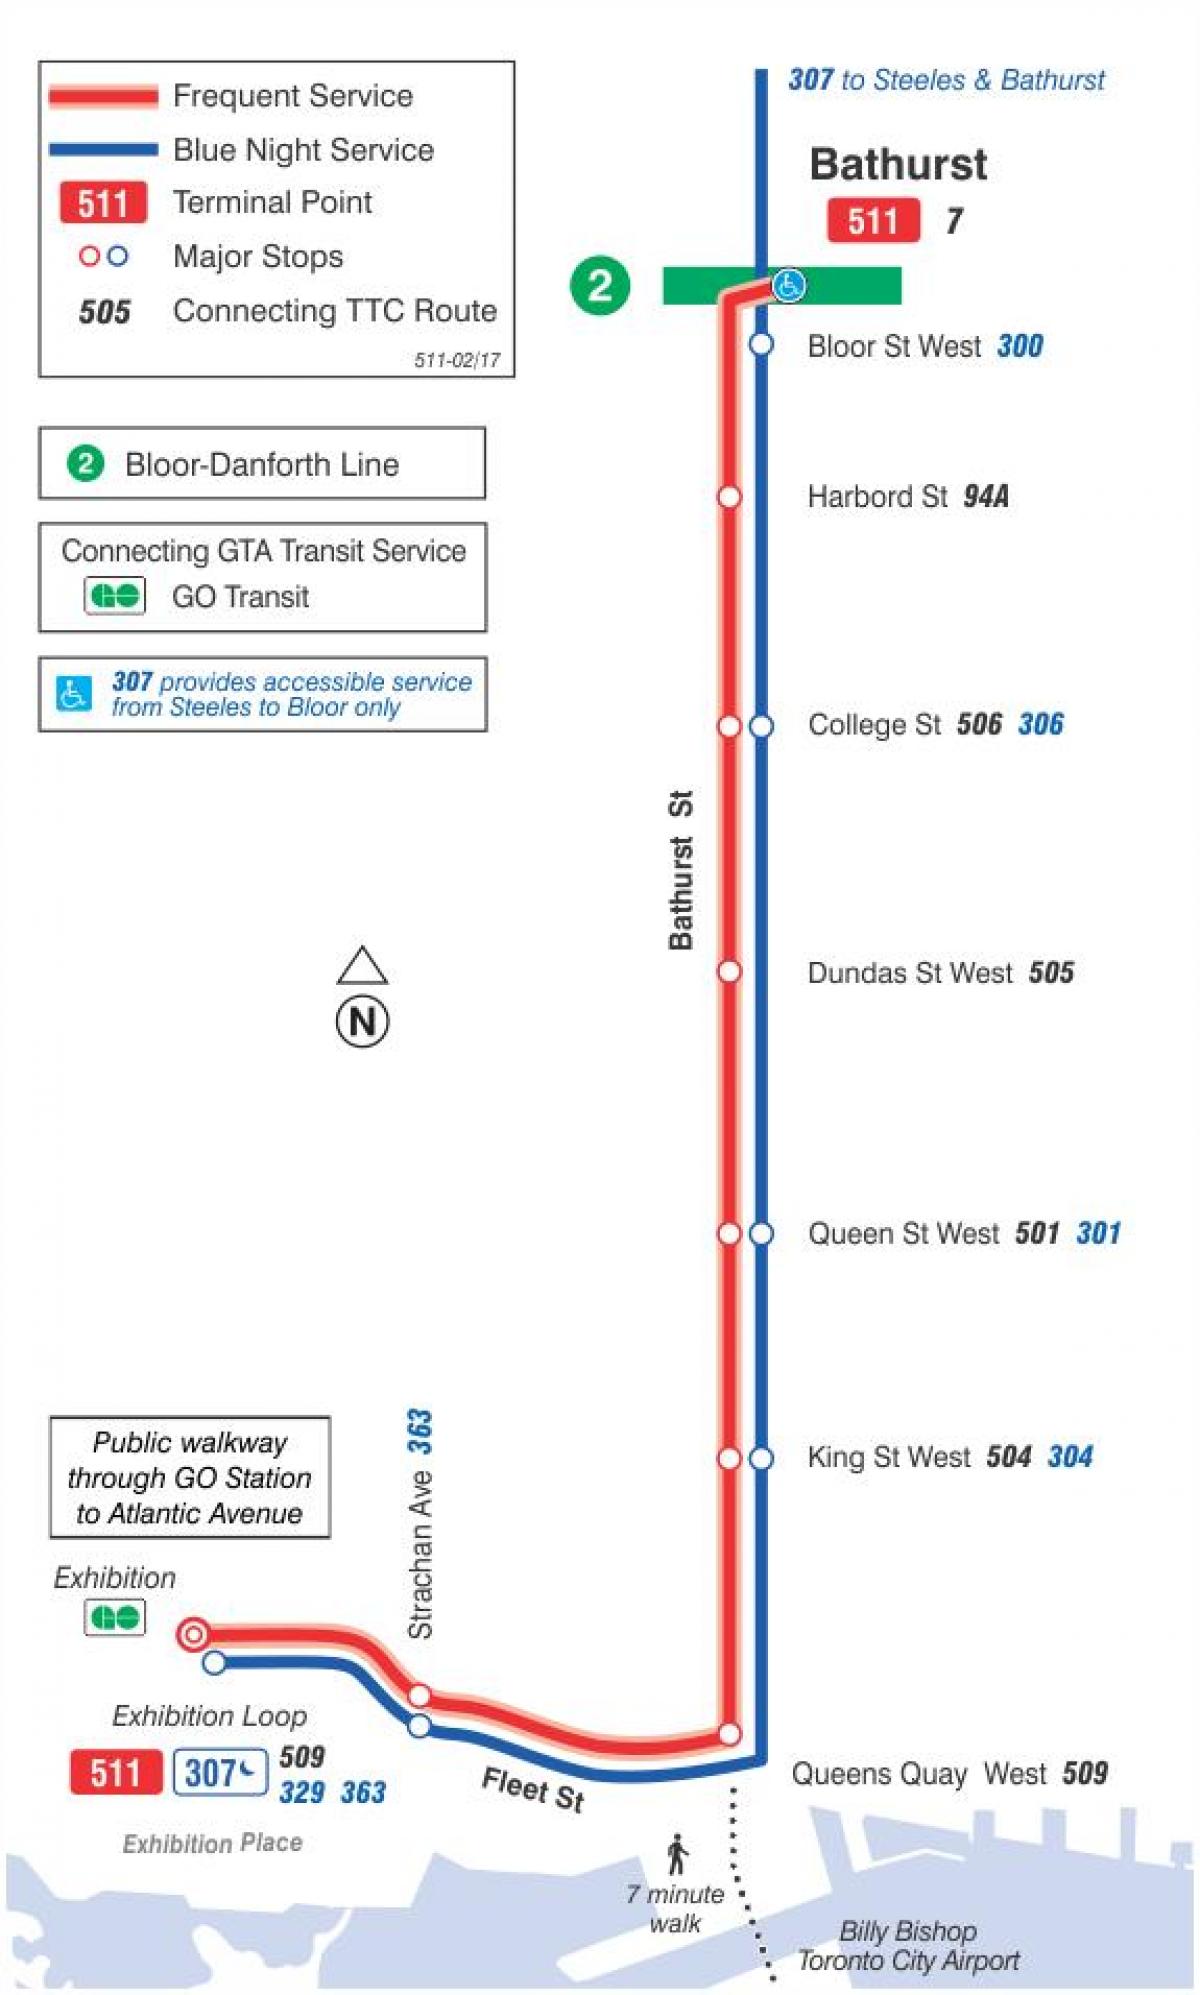 Χάρτης του τραμ γραμμή 511 Bathurst